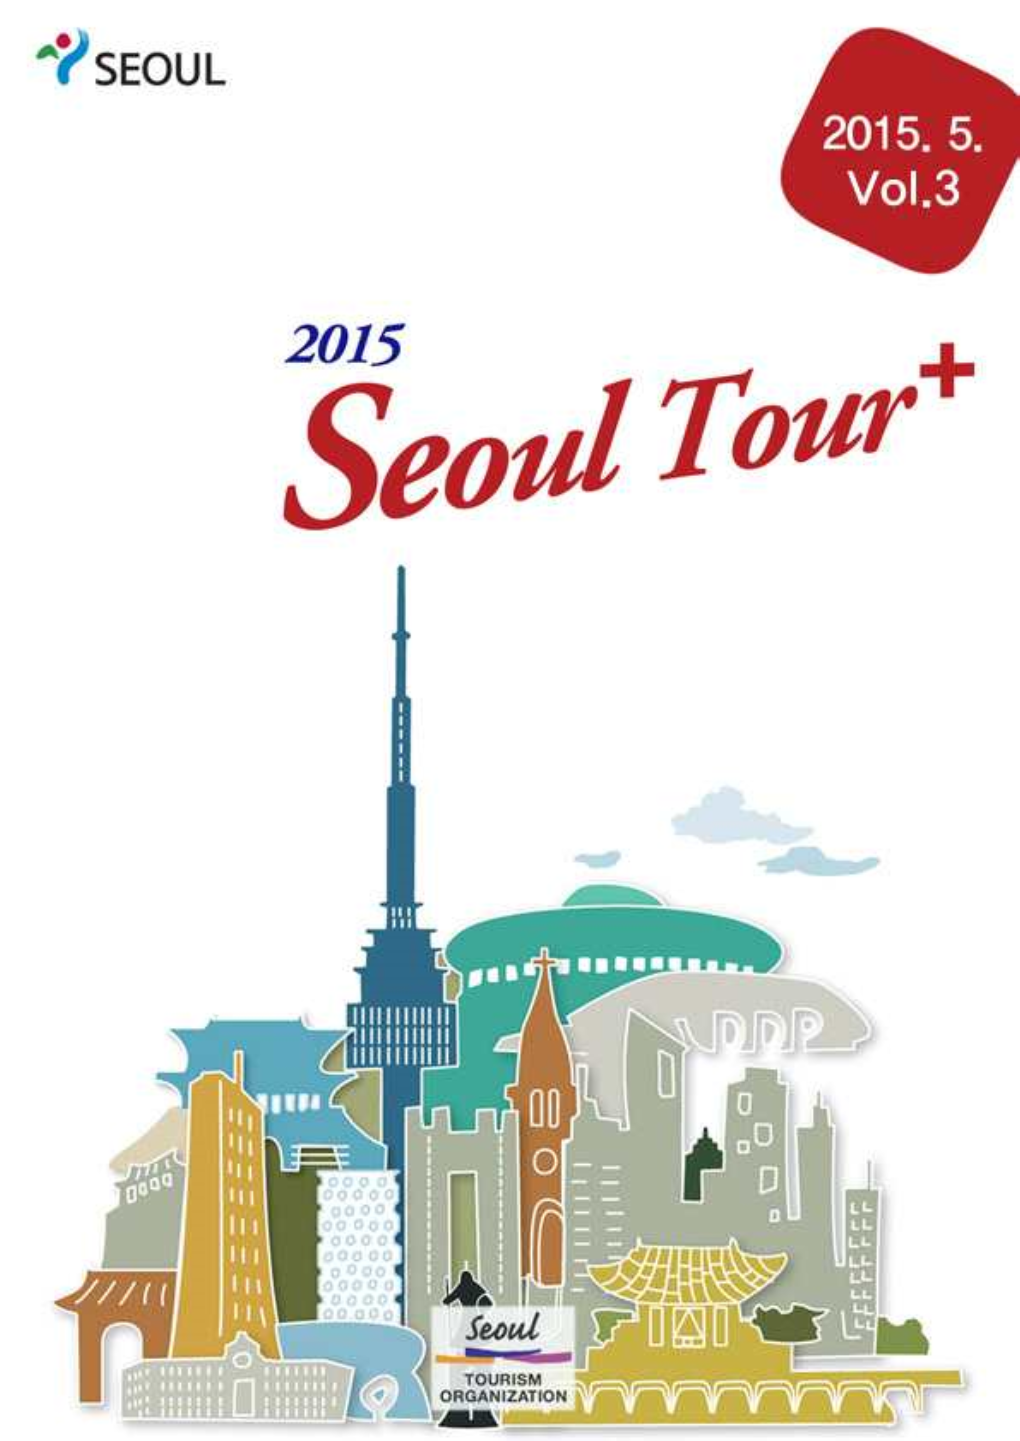 Seoul Tour+ Vol.3 En.Hwp